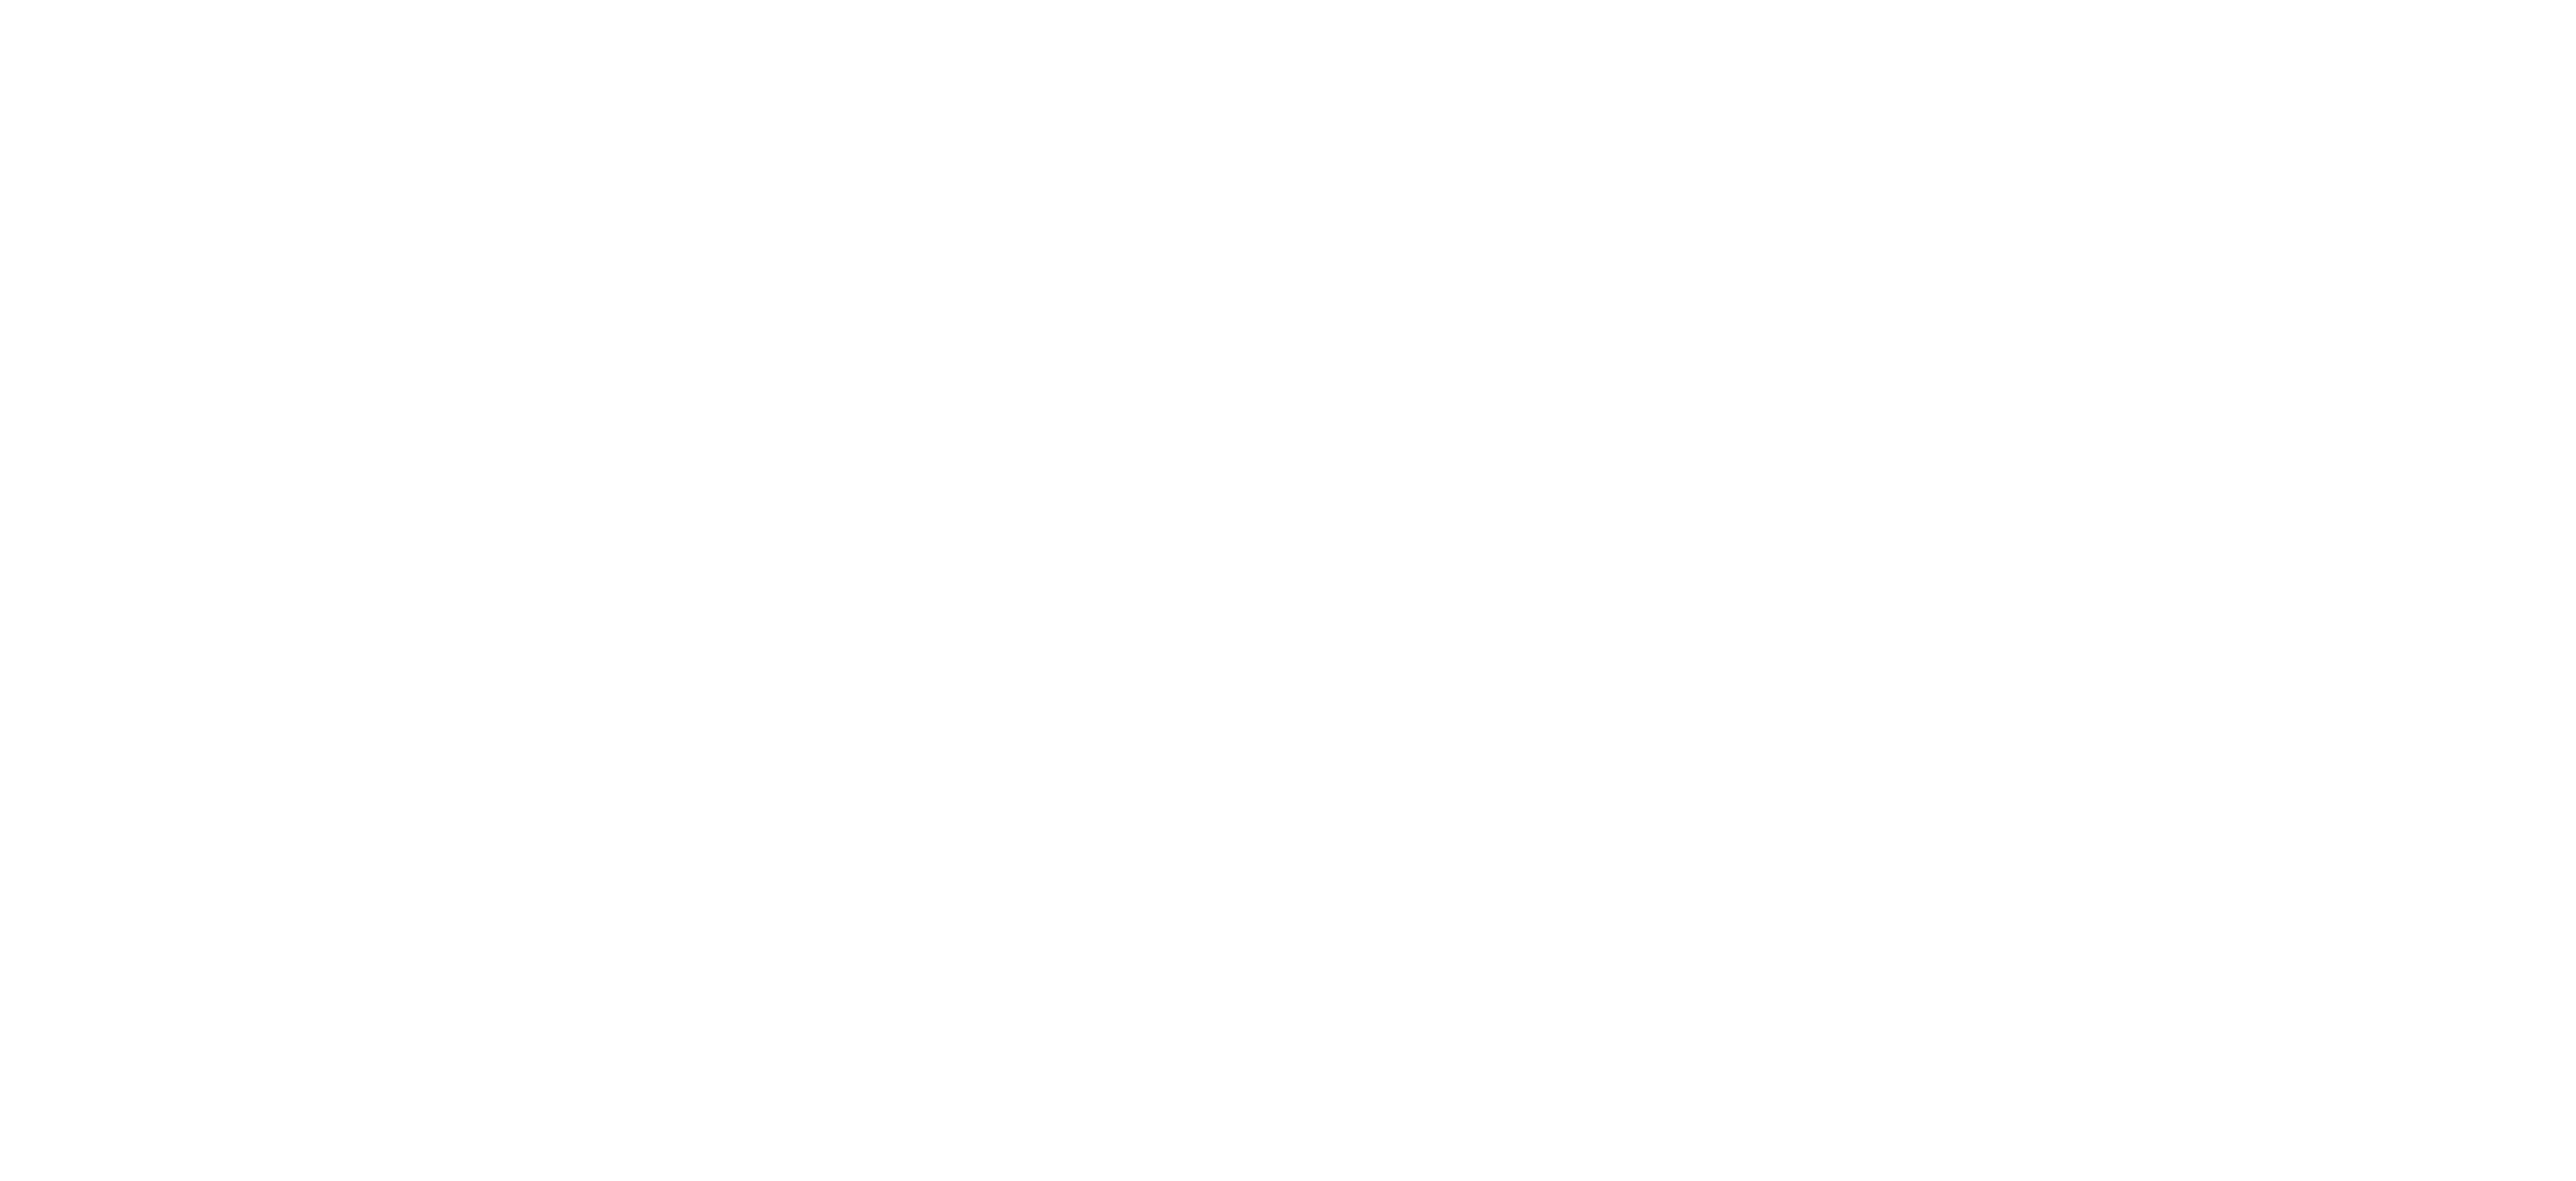 91̳ Centennial 1923 - 2003